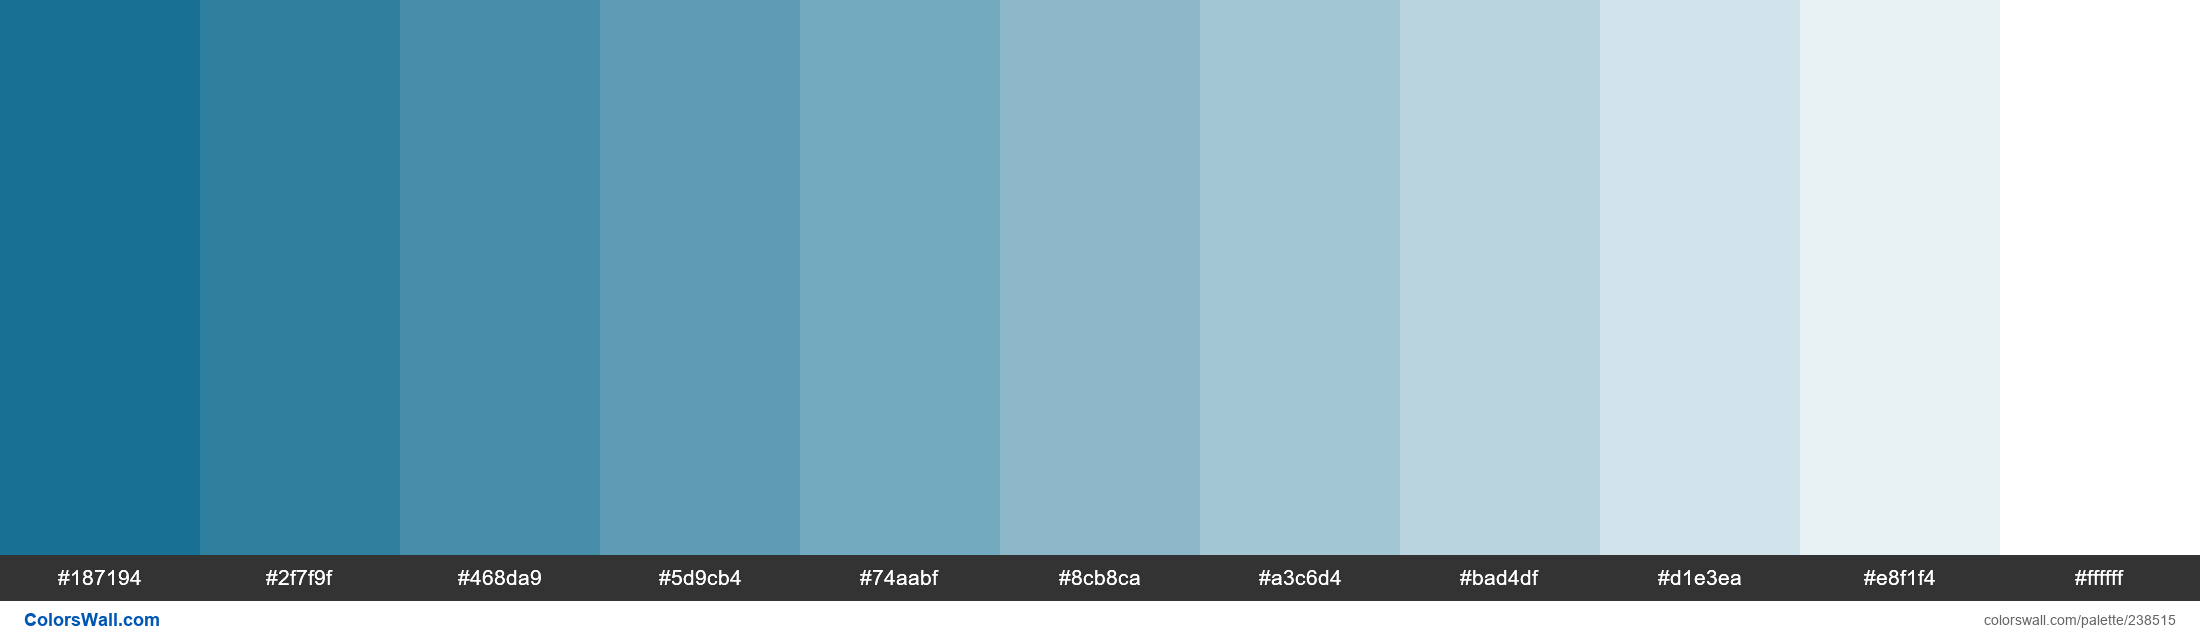 Mineral Blue colors palette - ColorsWall